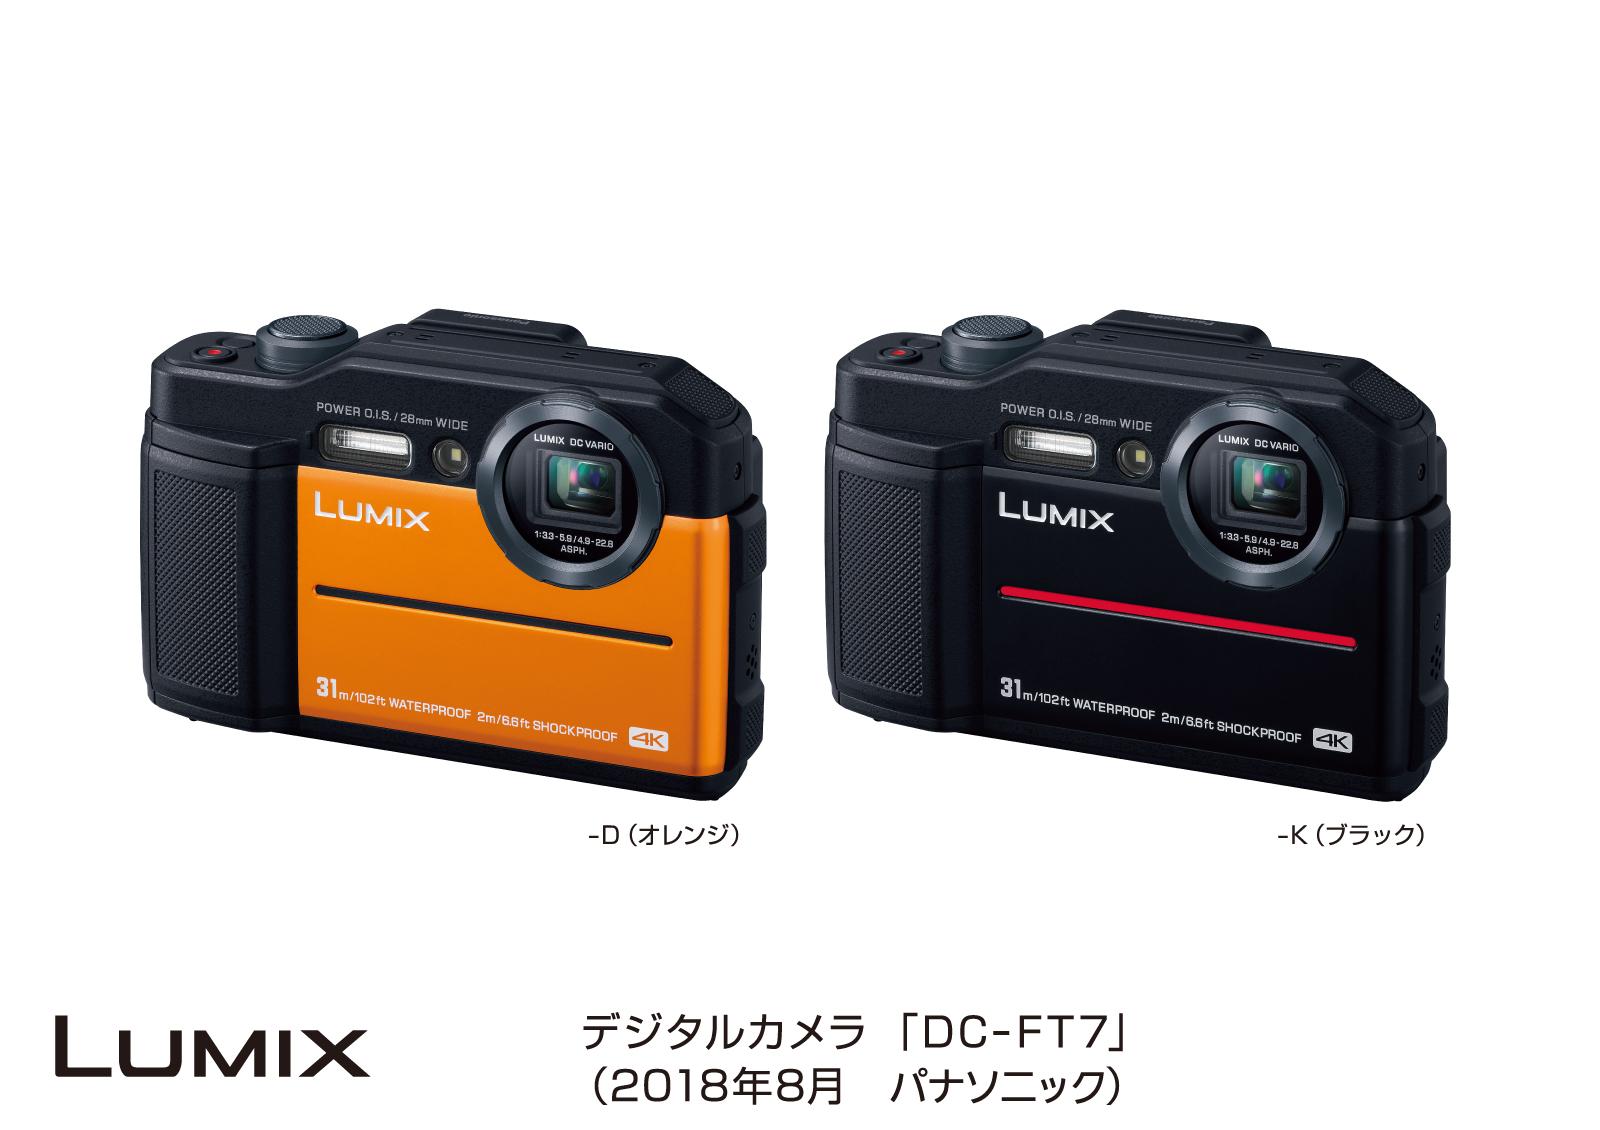 デジタルカメラ LUMIX 「DC-FT7」